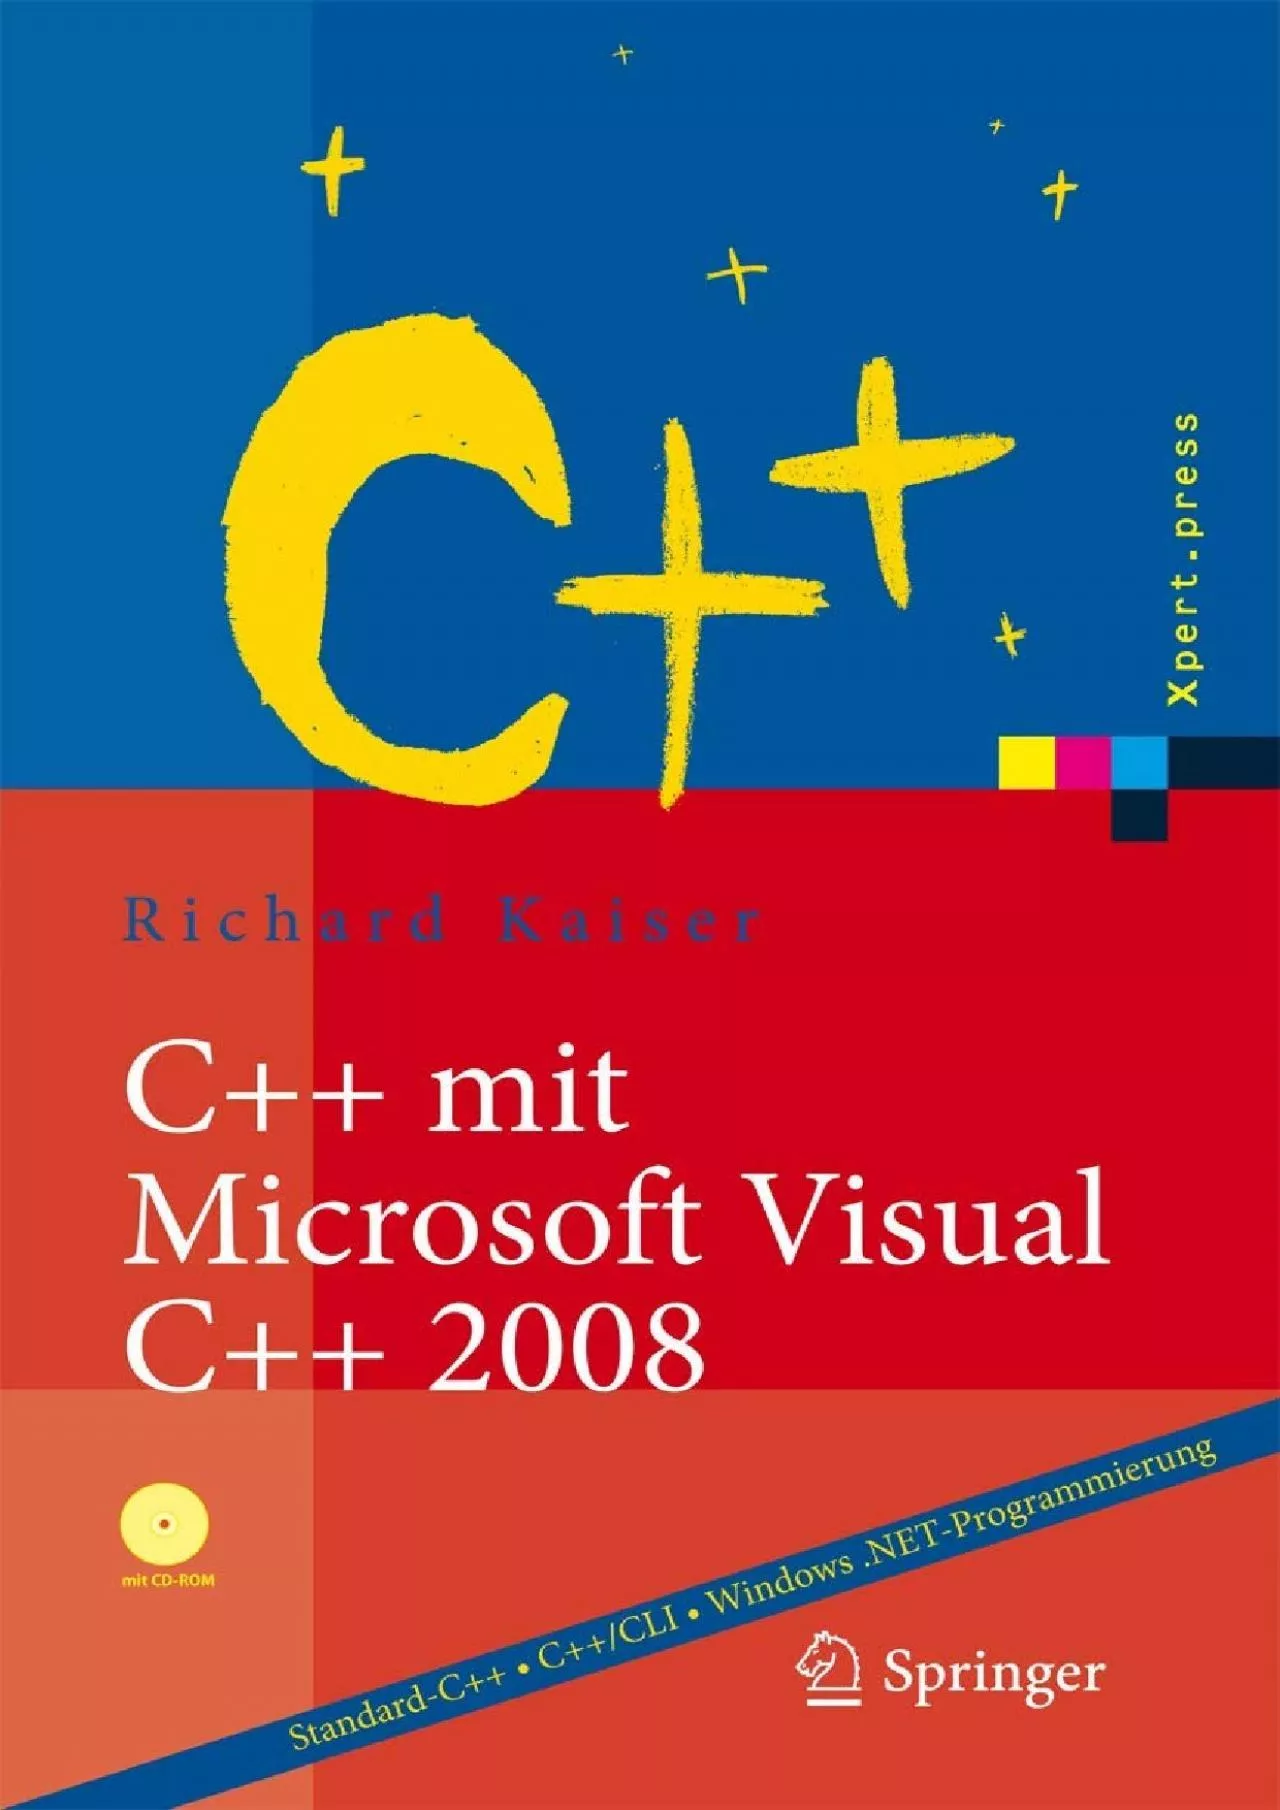 [BEST]-C++ mit Microsoft Visual C++ 2008: Einführung in Standard-C++, C++CLI und die